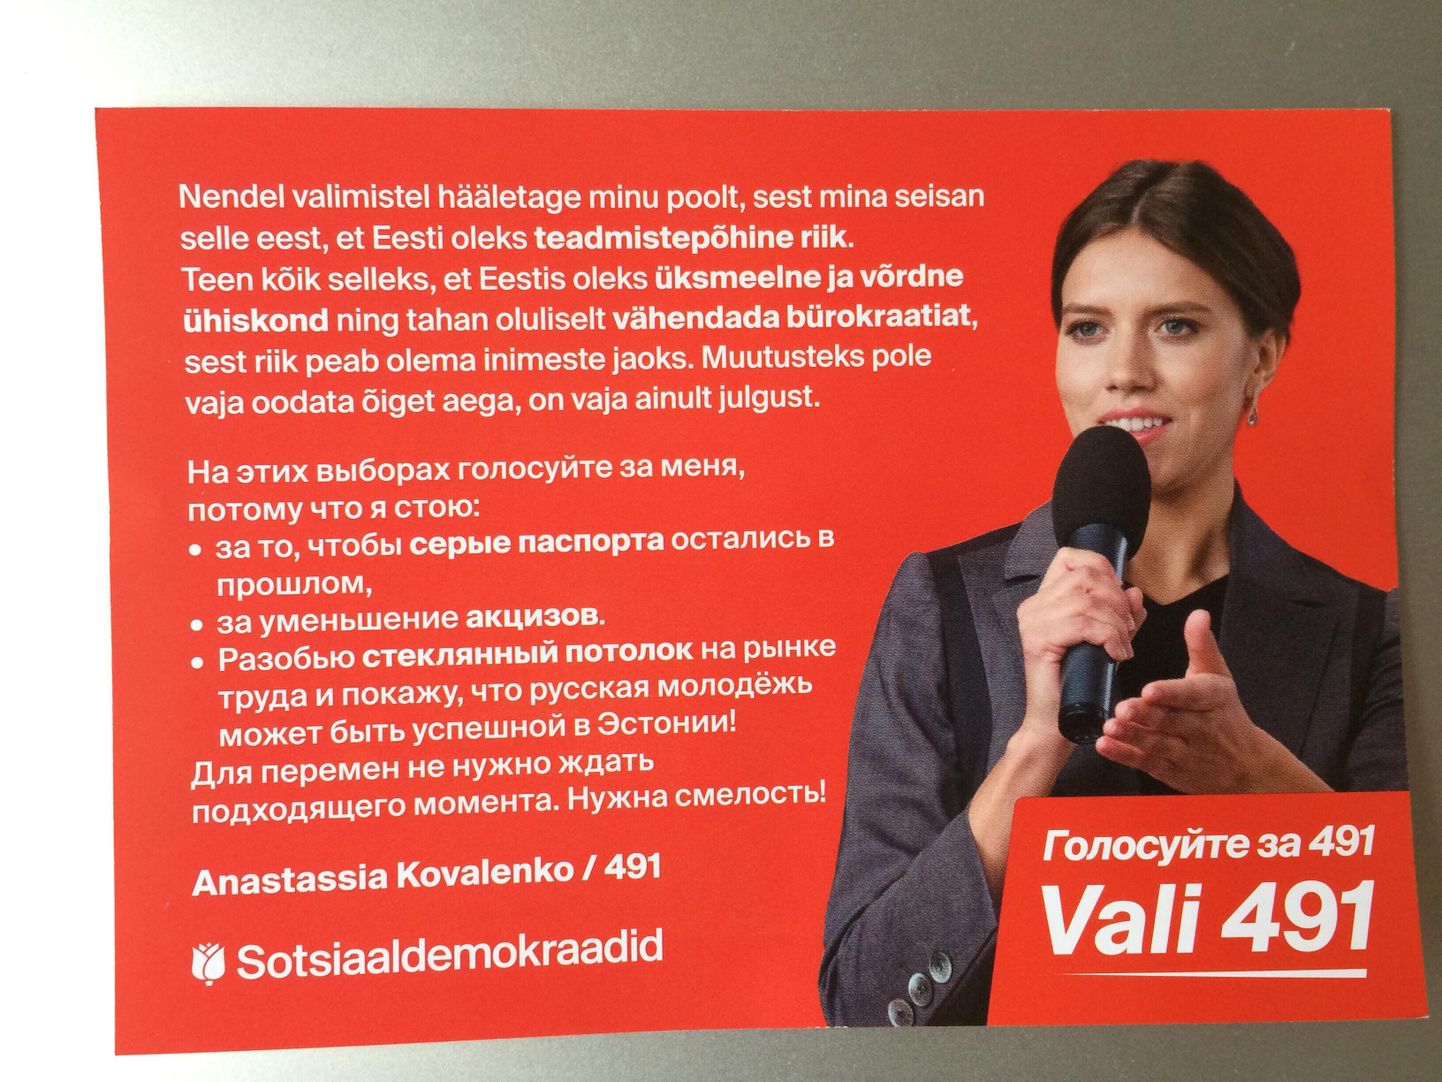 Рекламный буклет Анастасии Коваленко.